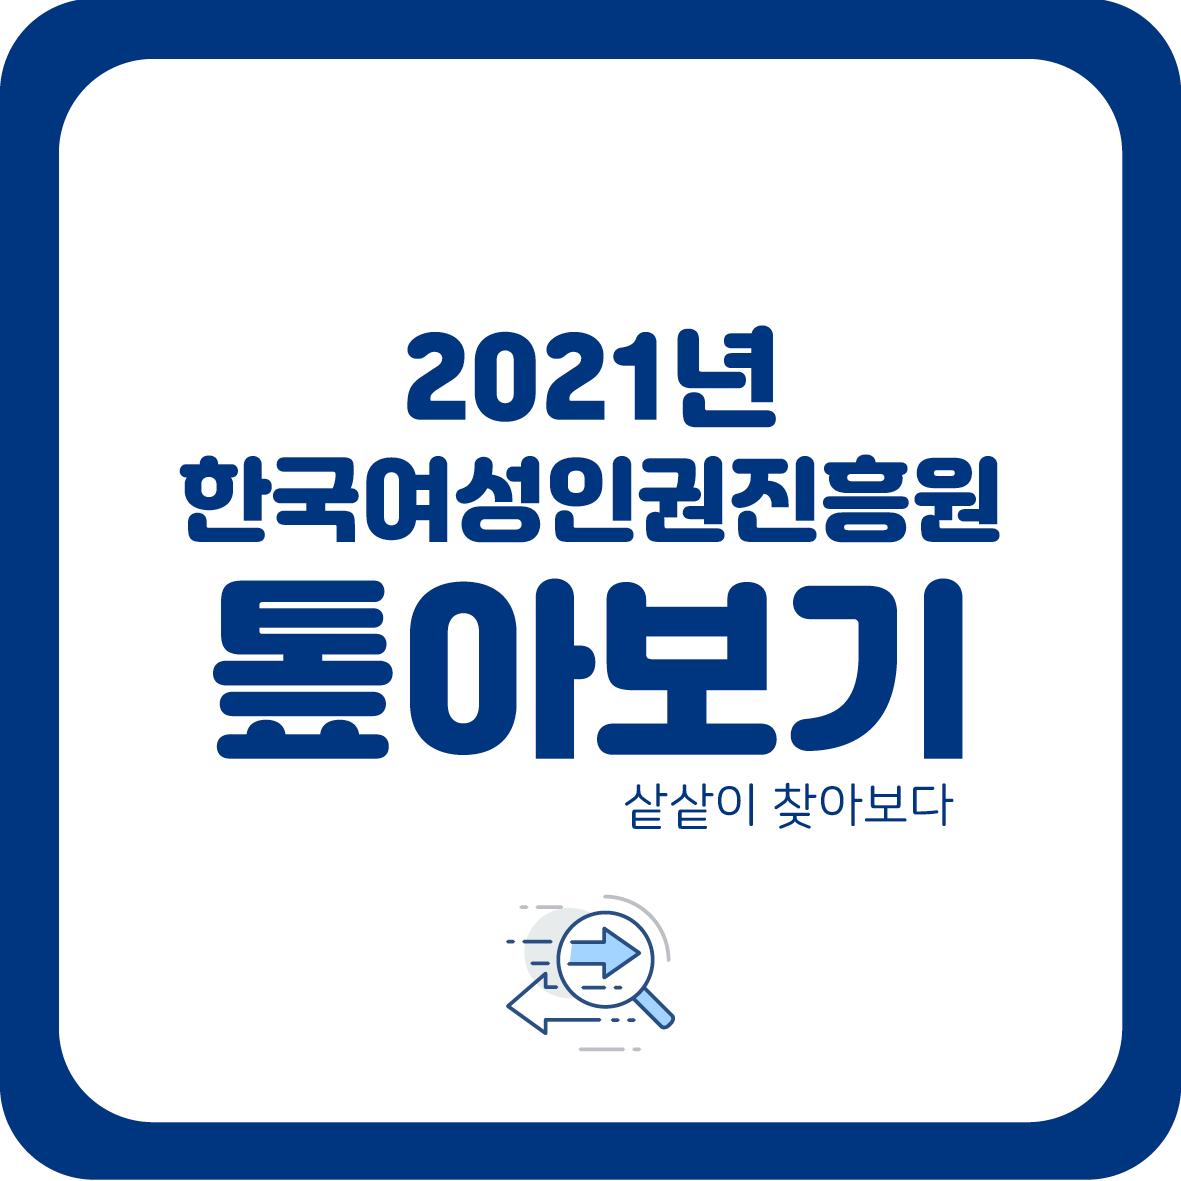 1장 2021년 한국여성인권진흥원 톺아보기 샅샅이 찾아보다